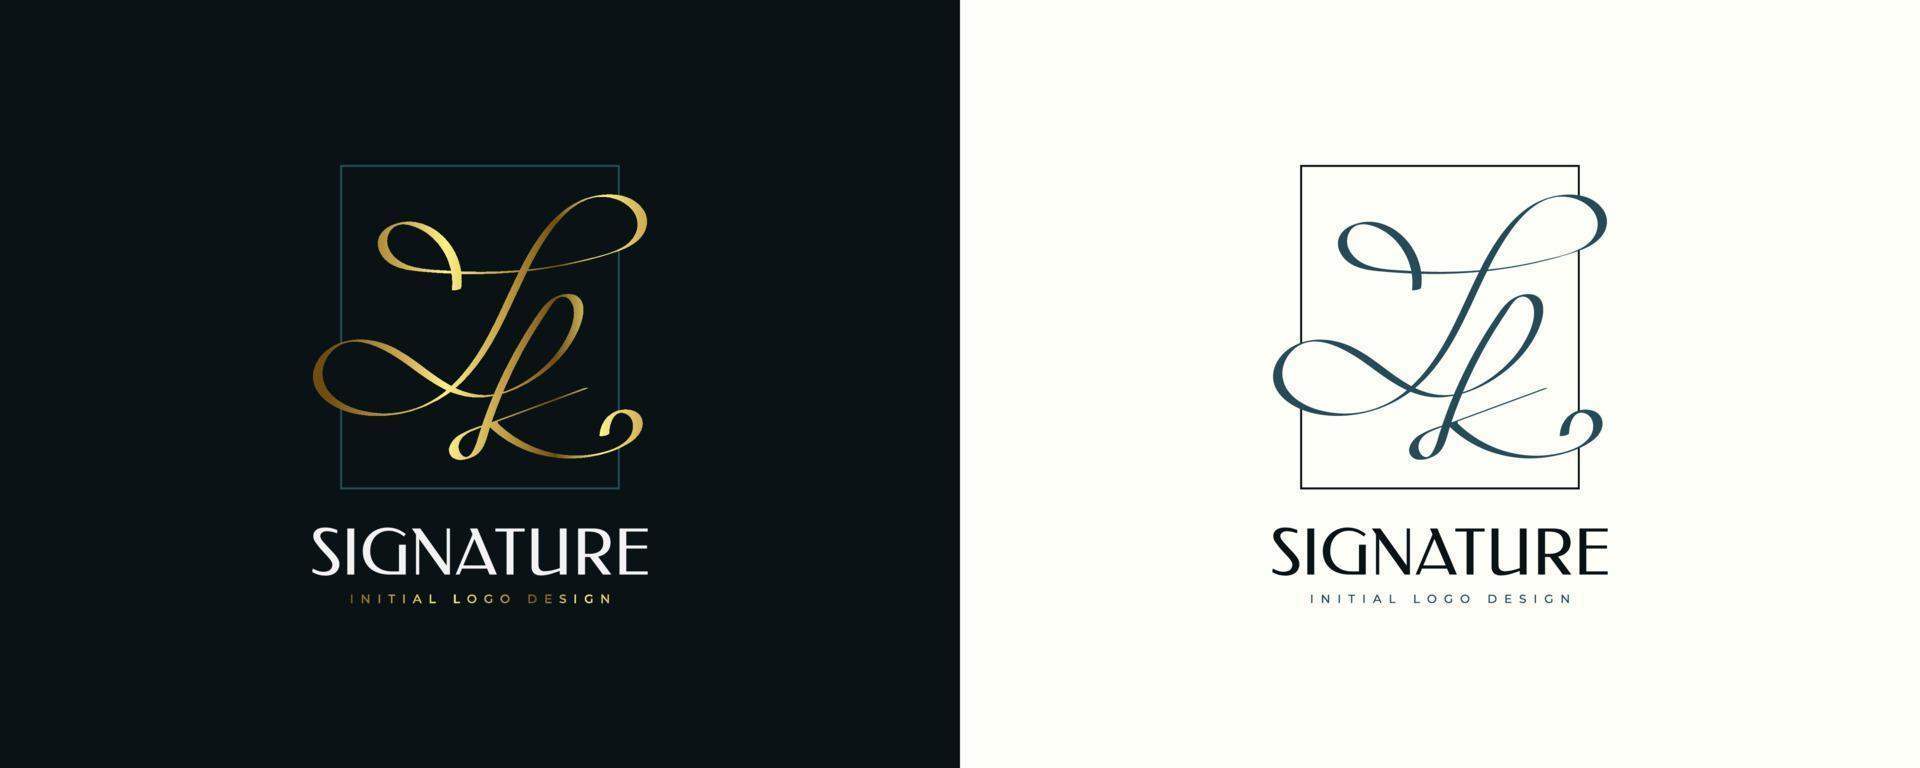 design de logotipo inicial j e k em estilo elegante de caligrafia dourada. logotipo ou símbolo de assinatura jk para casamento, moda, joias, boutique e identidade de marca comercial vetor